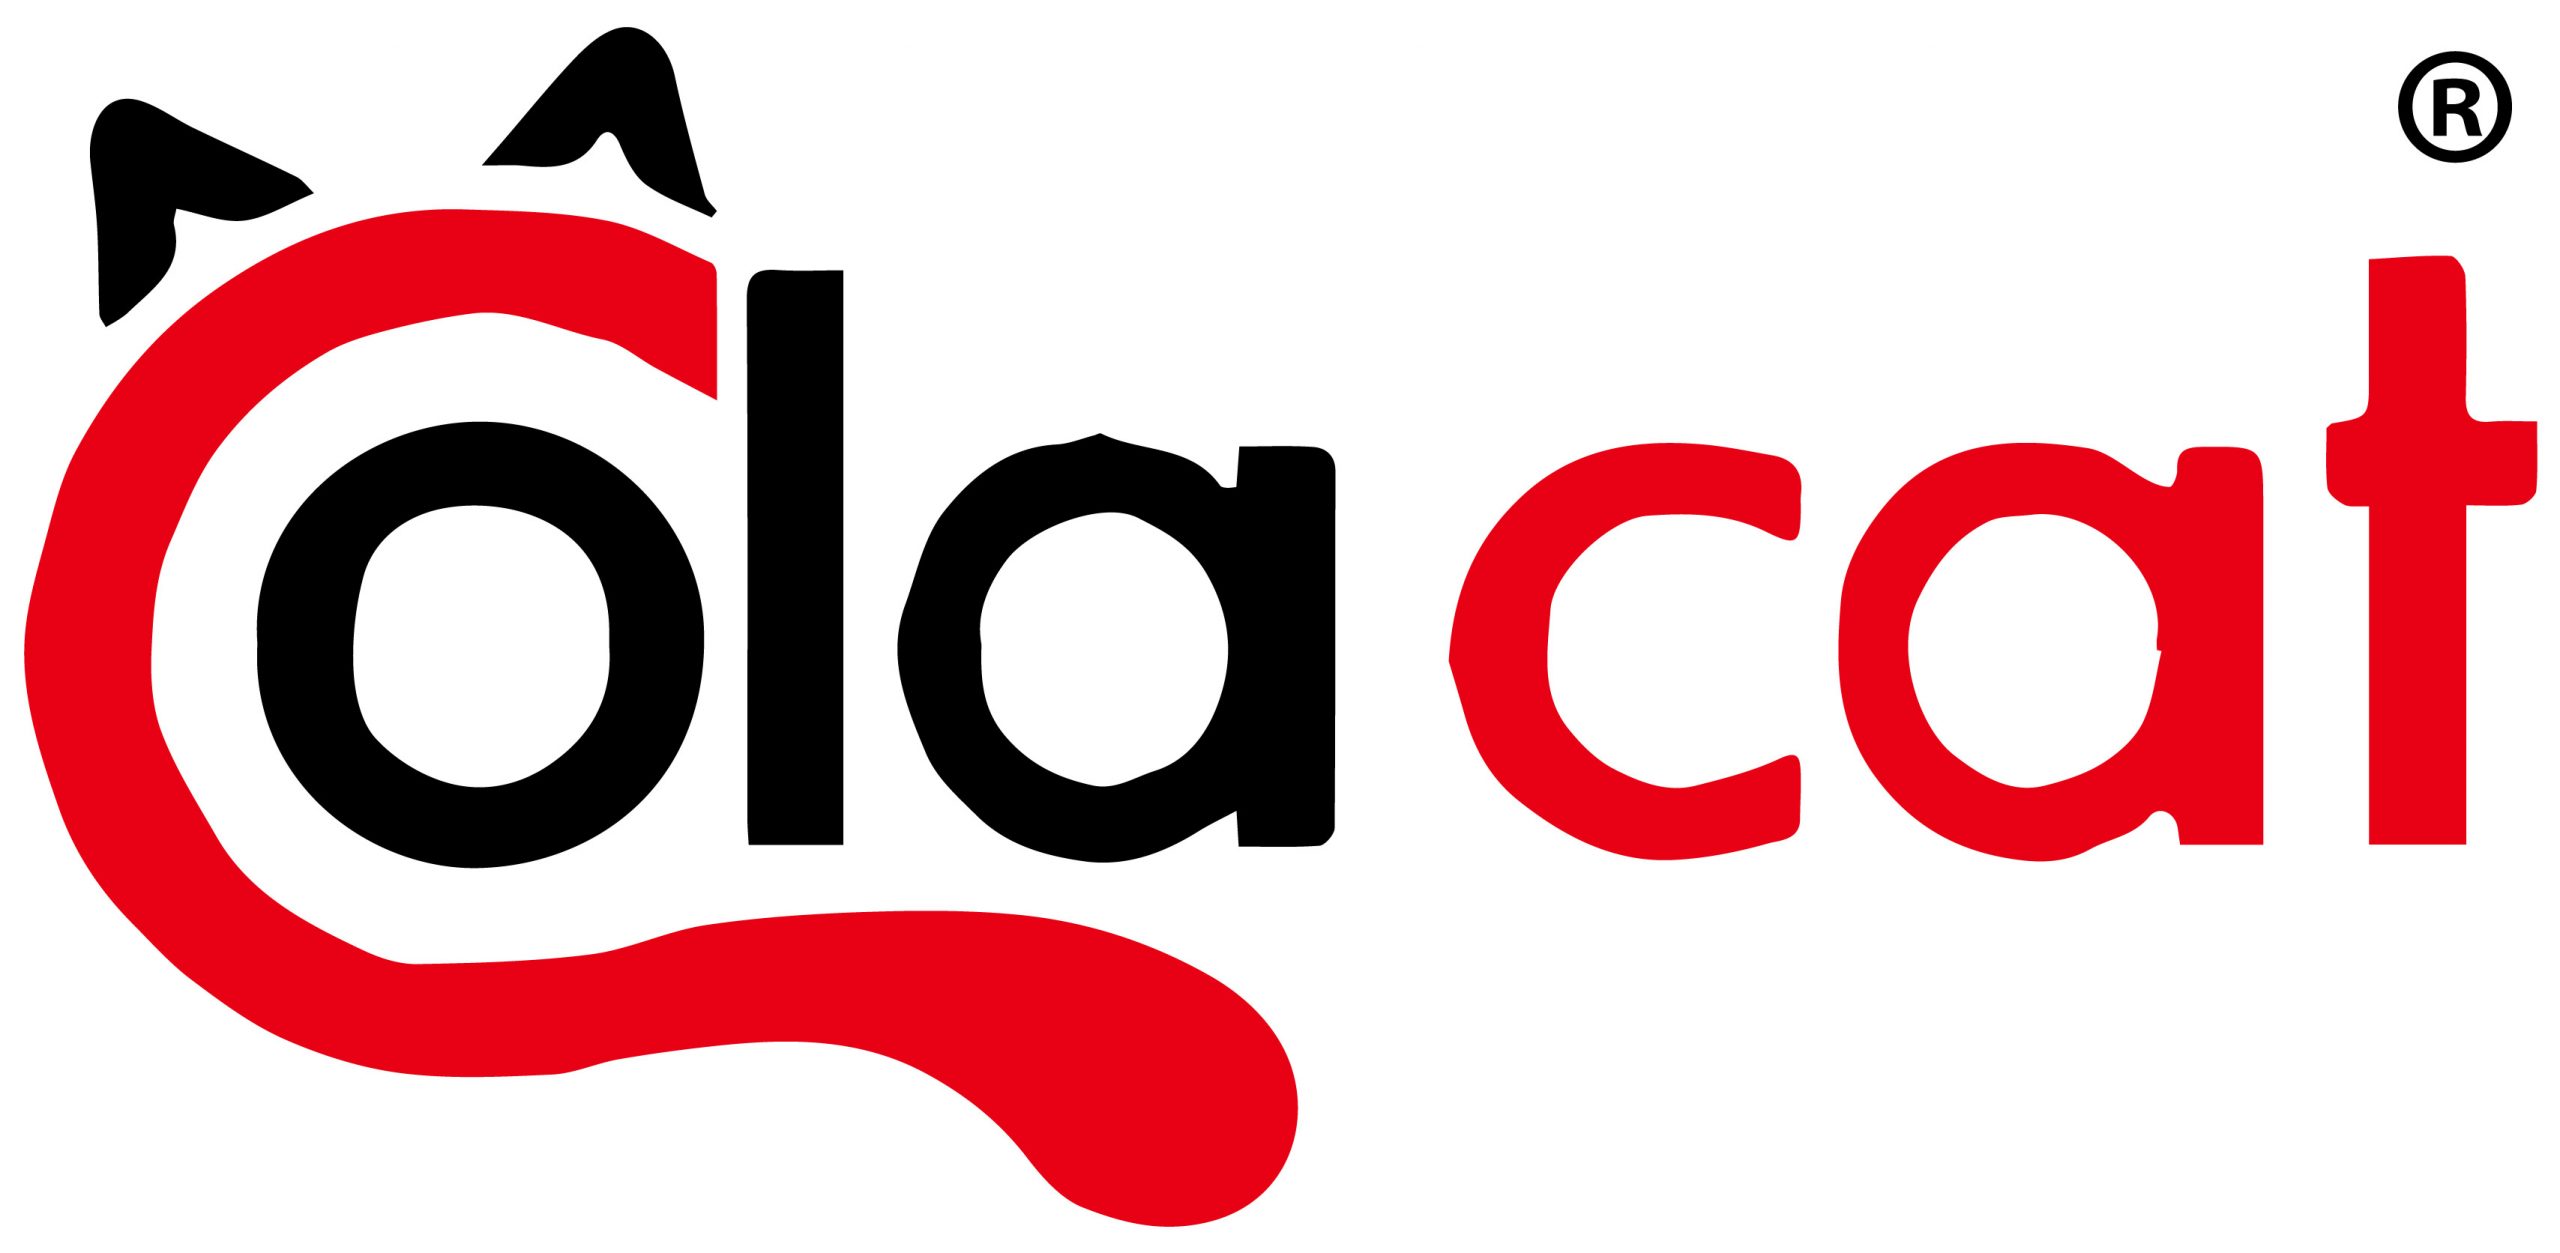 Colacat-Logo